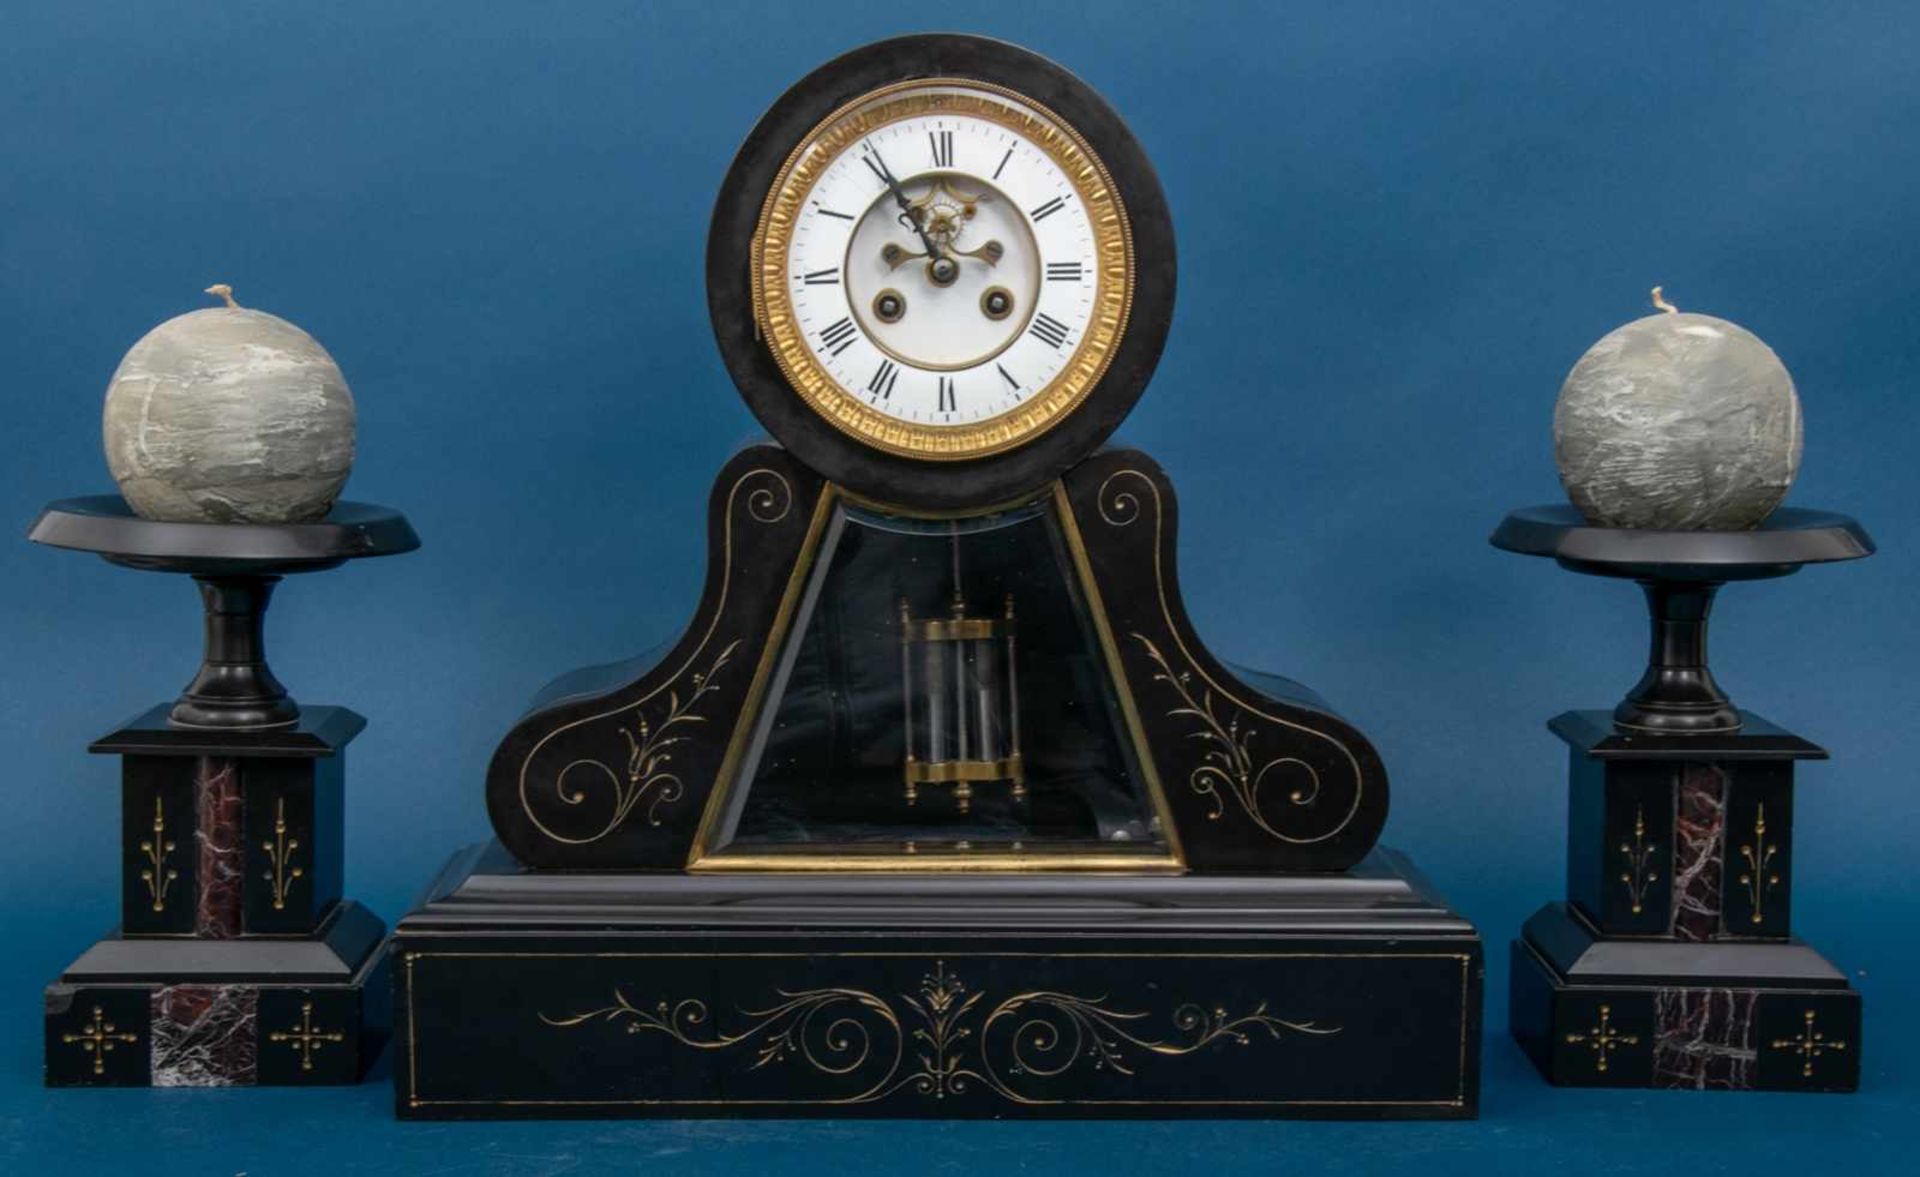 3 teilige Kaminuhr um 1900/ 20, schwarzes Marmorgehäuse mit feinem Goldschnittdekor. Höhe der Uhr: